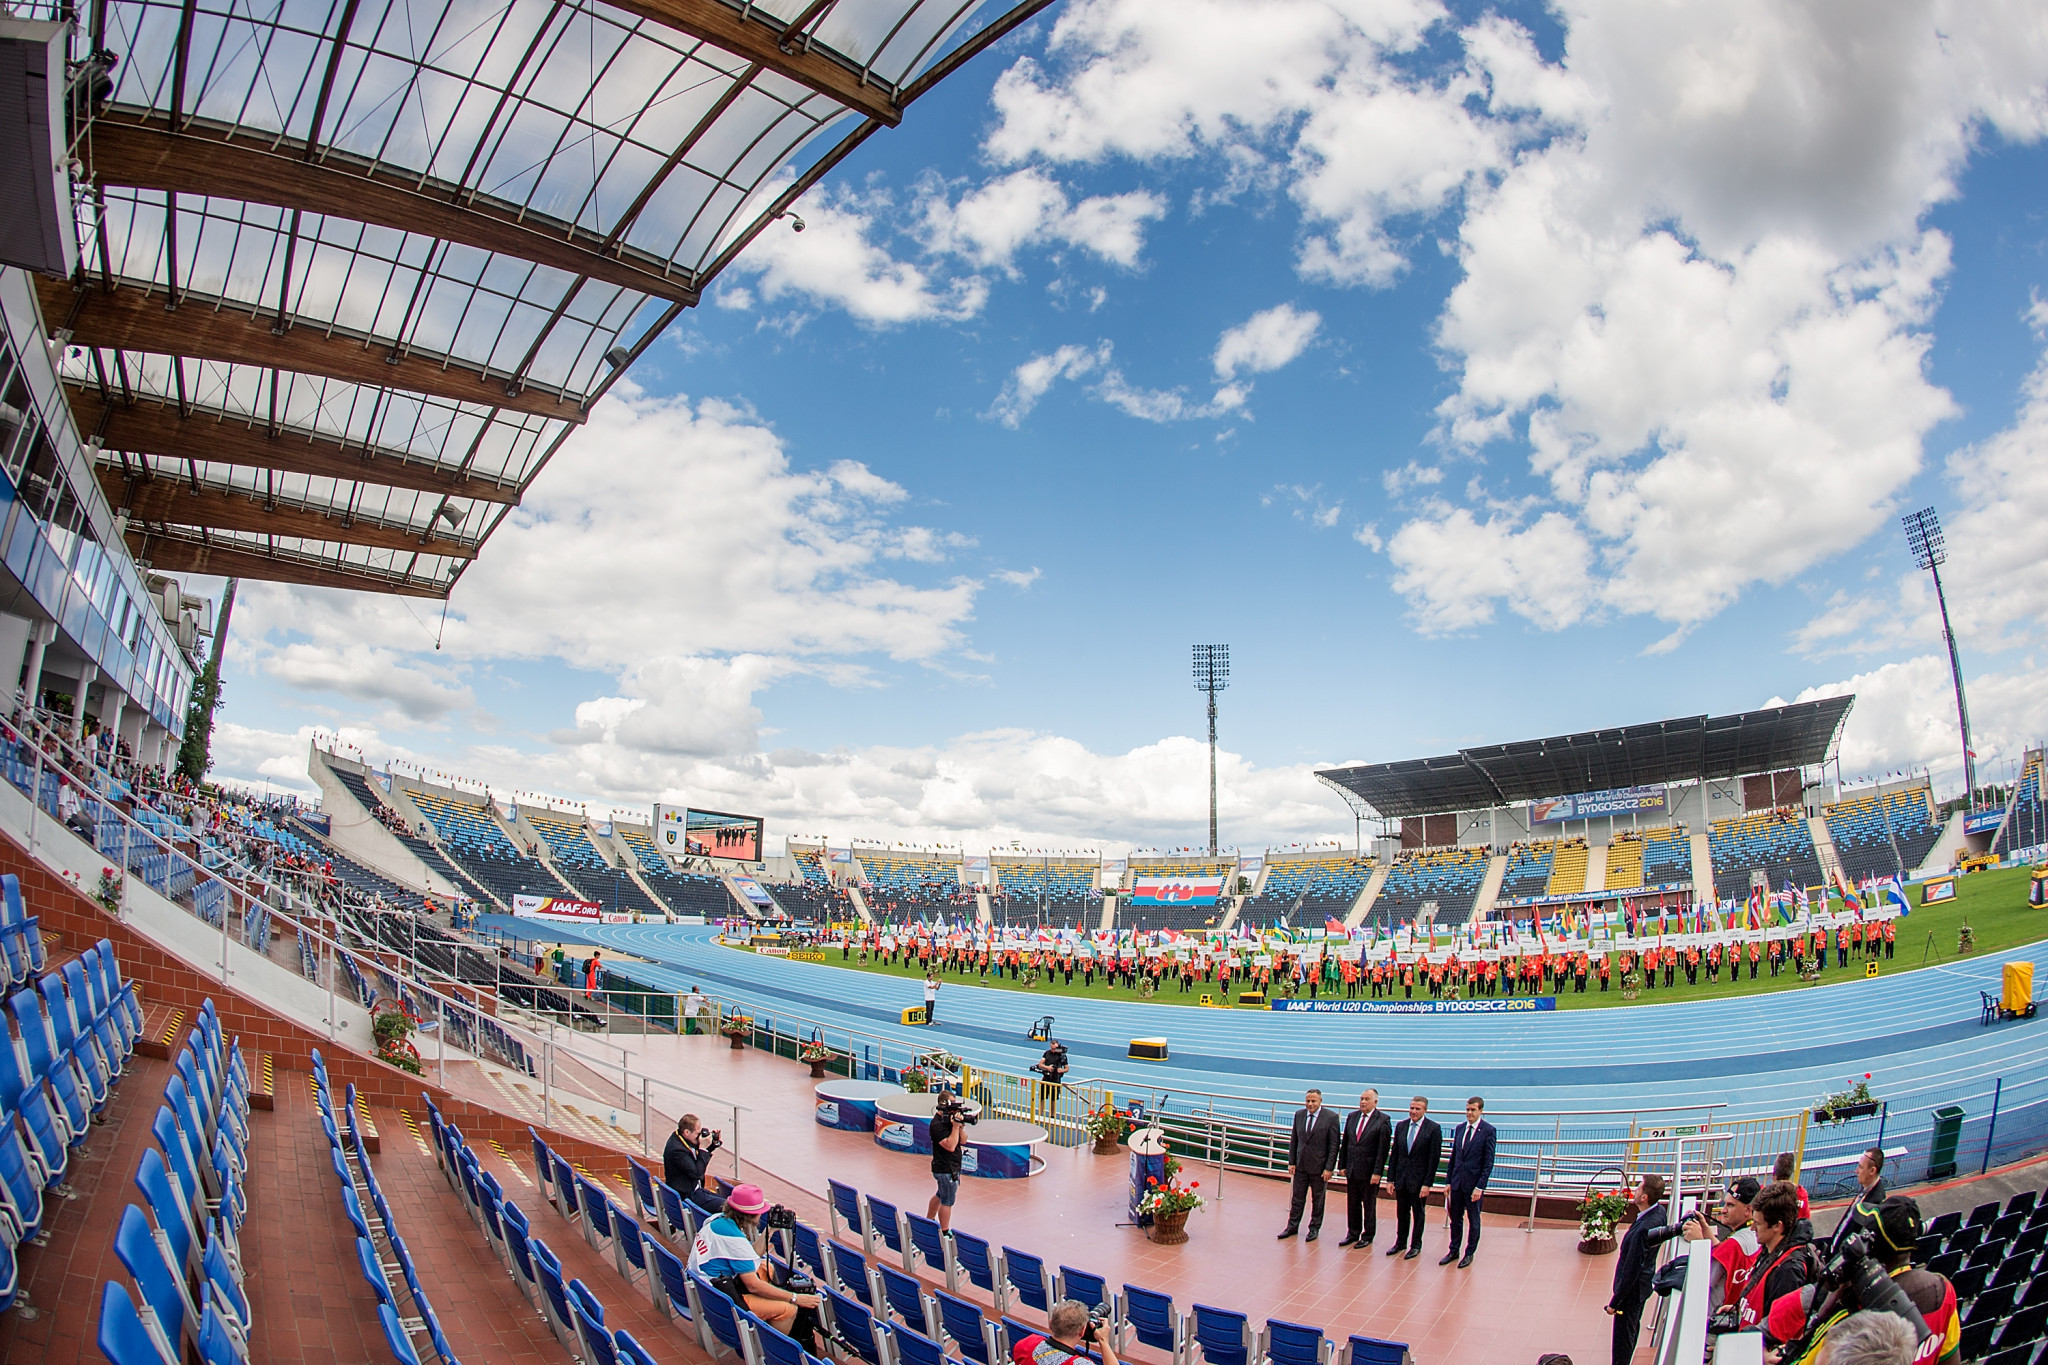 The Zdzisław Krzyszkowiak Stadium will be the venue for the World Para Athletics Grand Prix in Bydgoszcz ©Getty Images